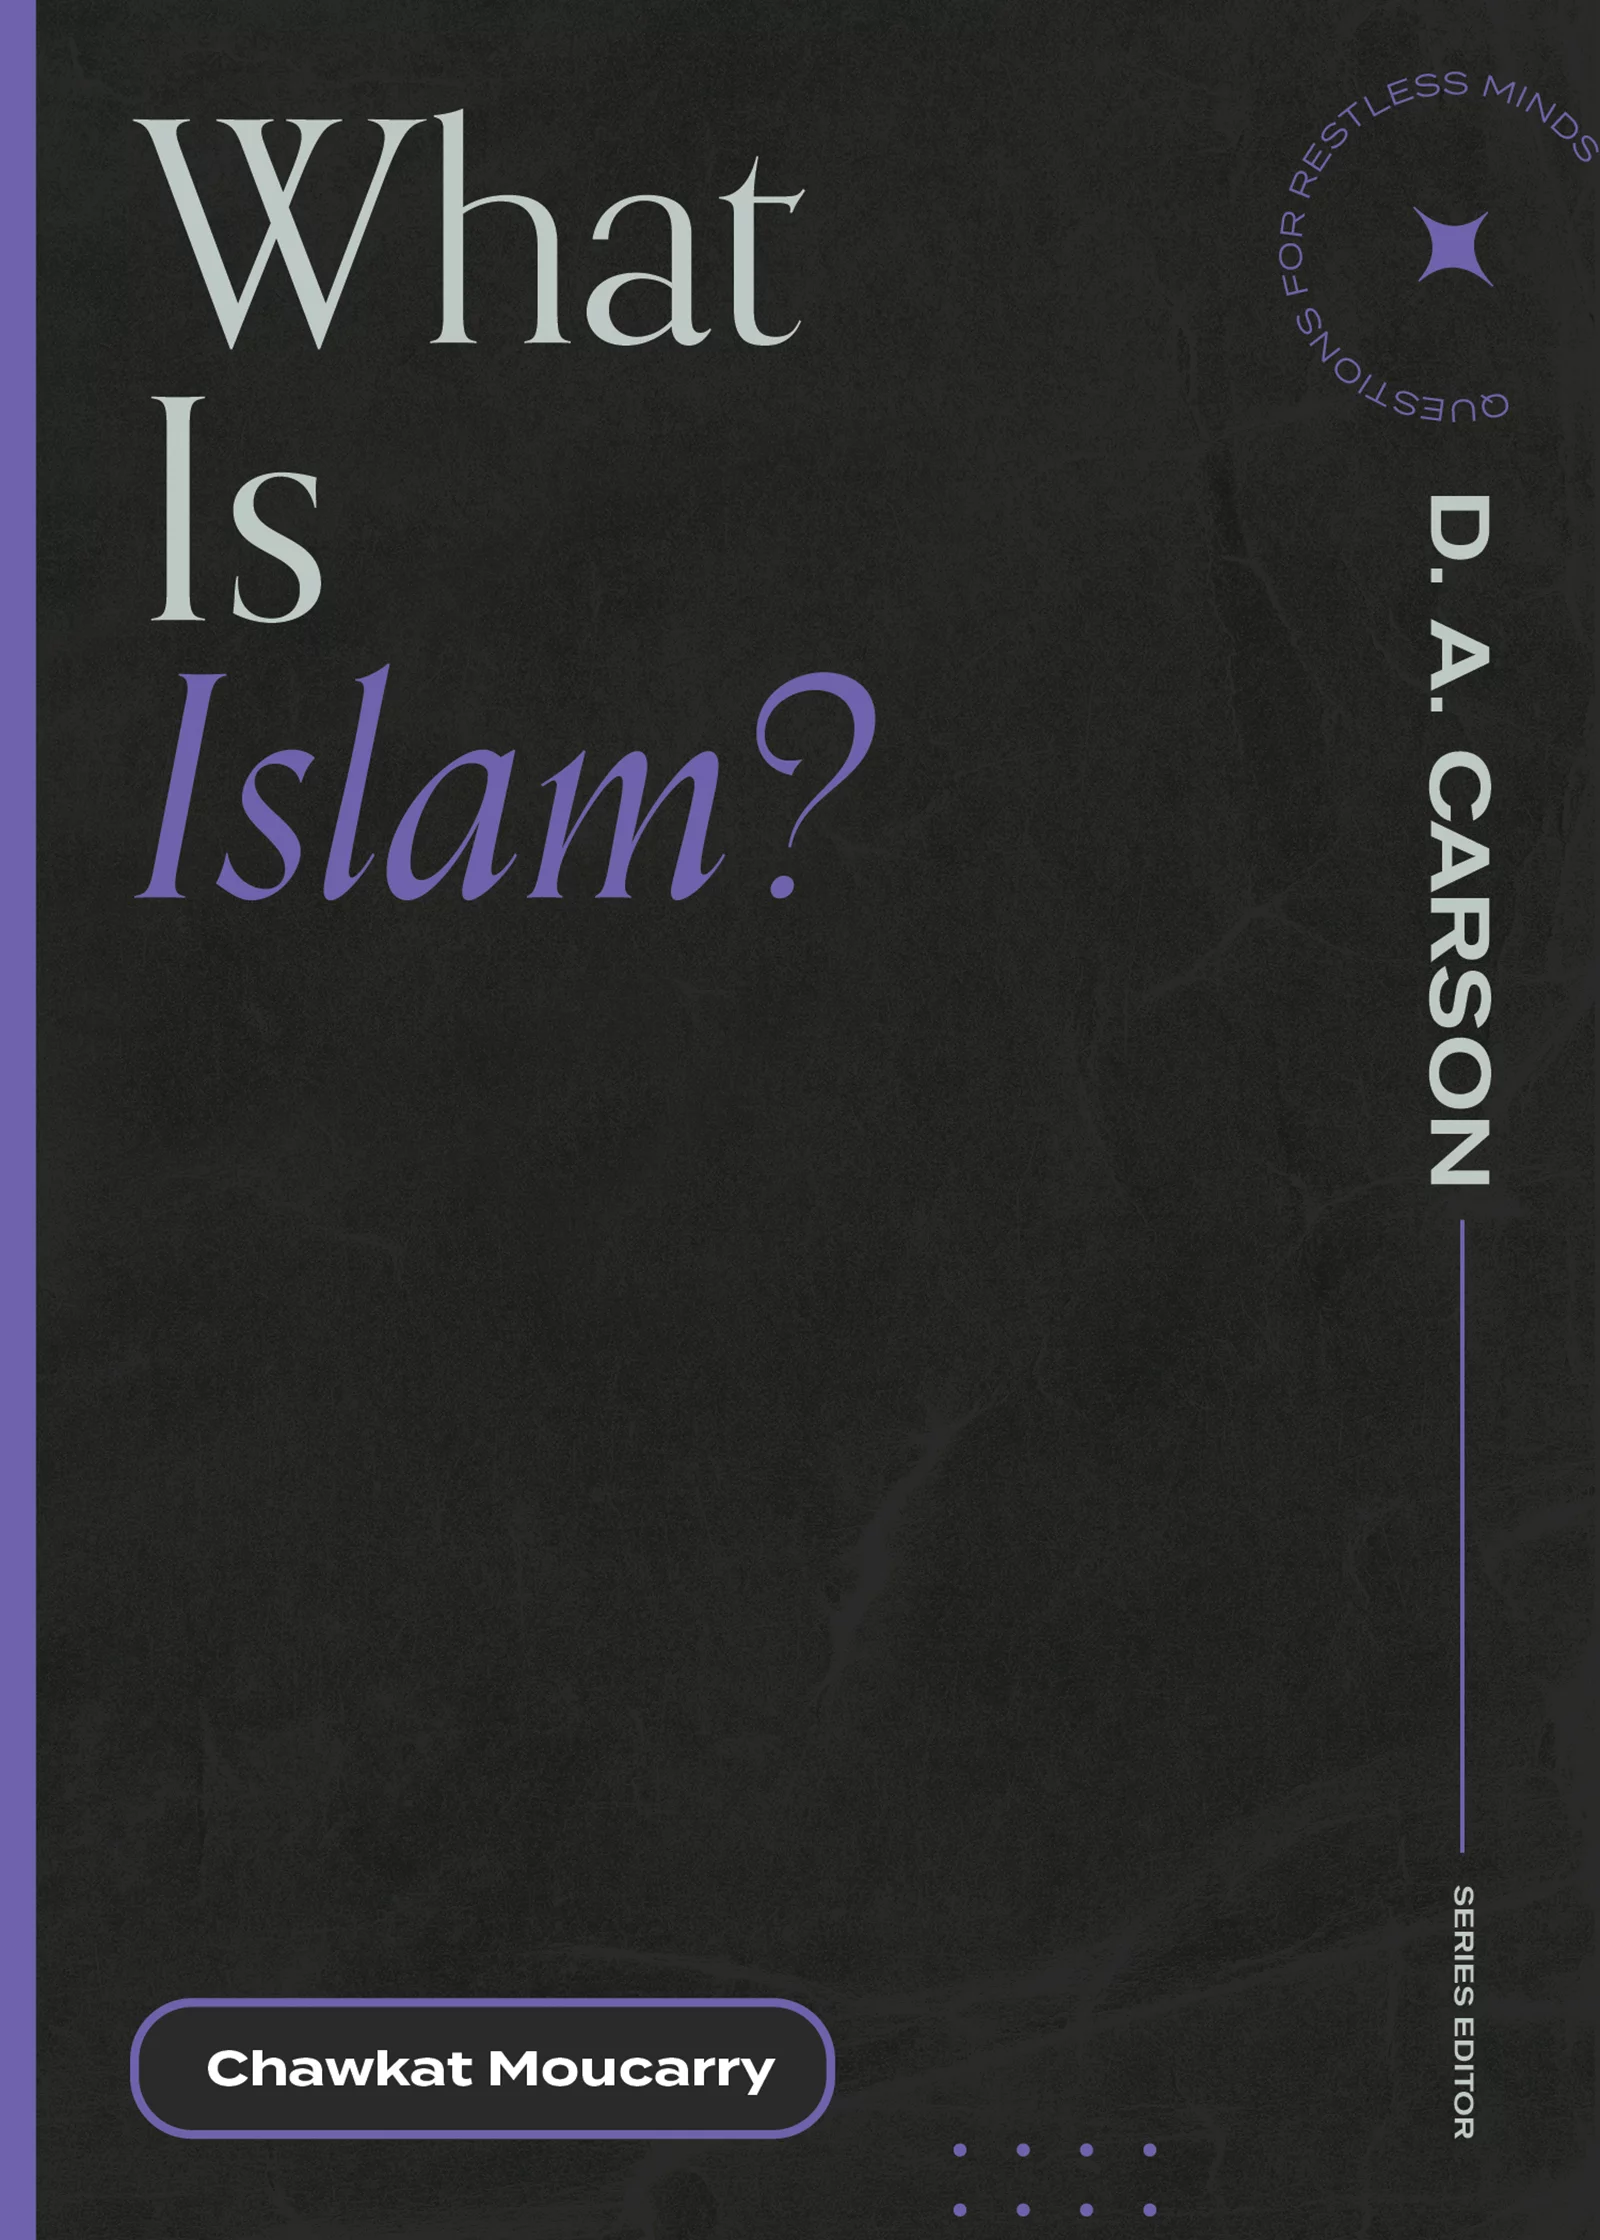  2022/08/What-is-Islam.webp 